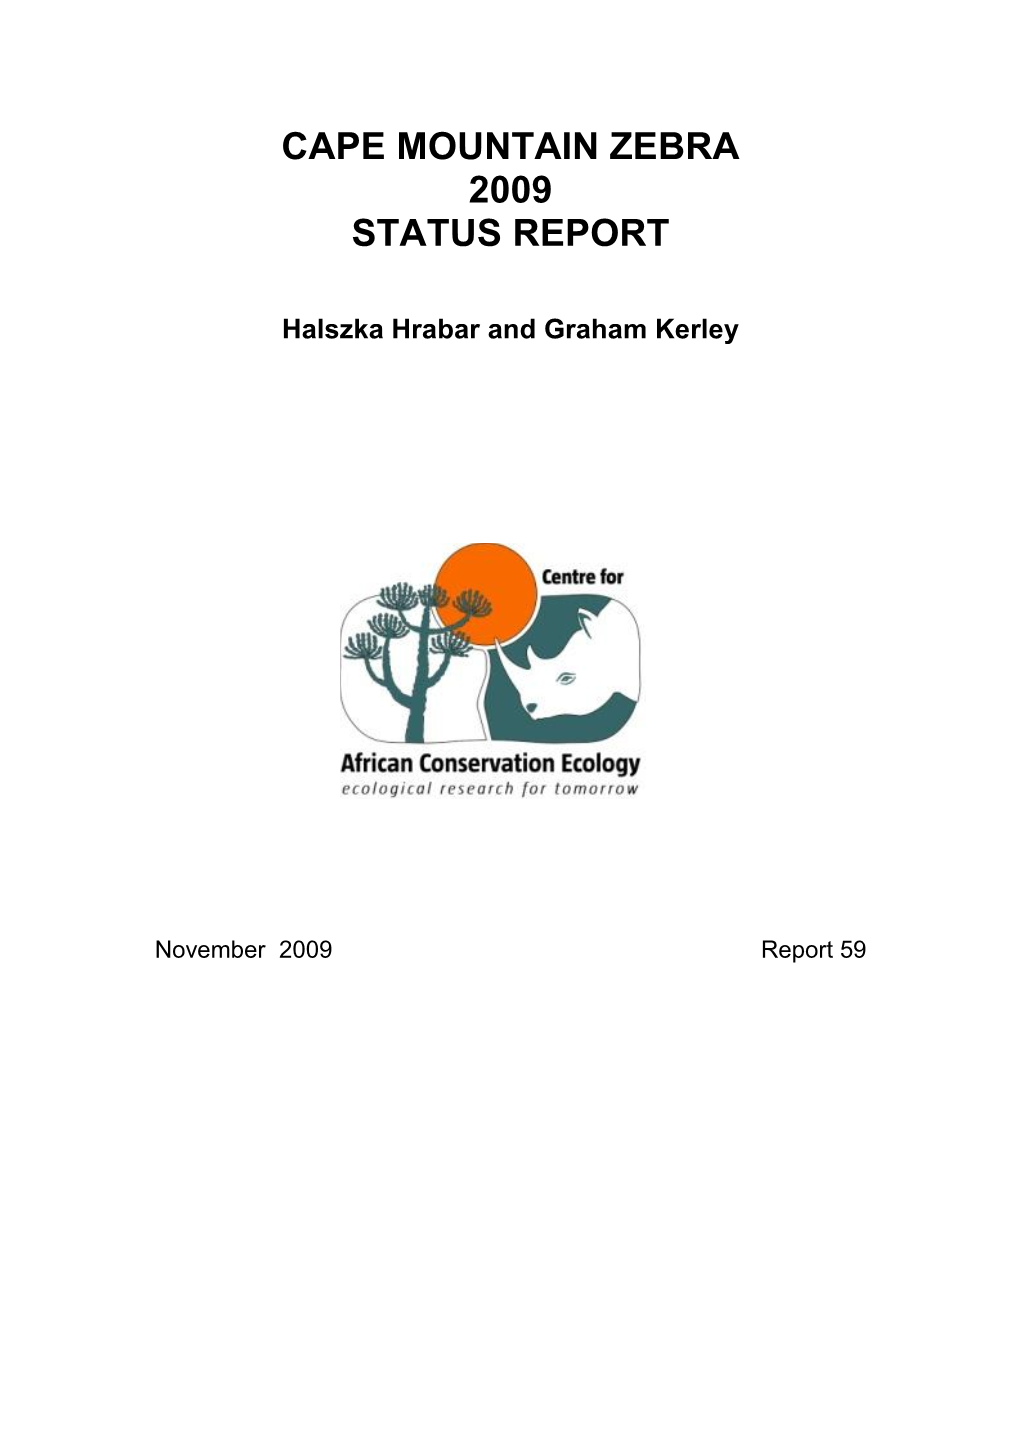 Cape Mountain Zebra 2009 Status Report